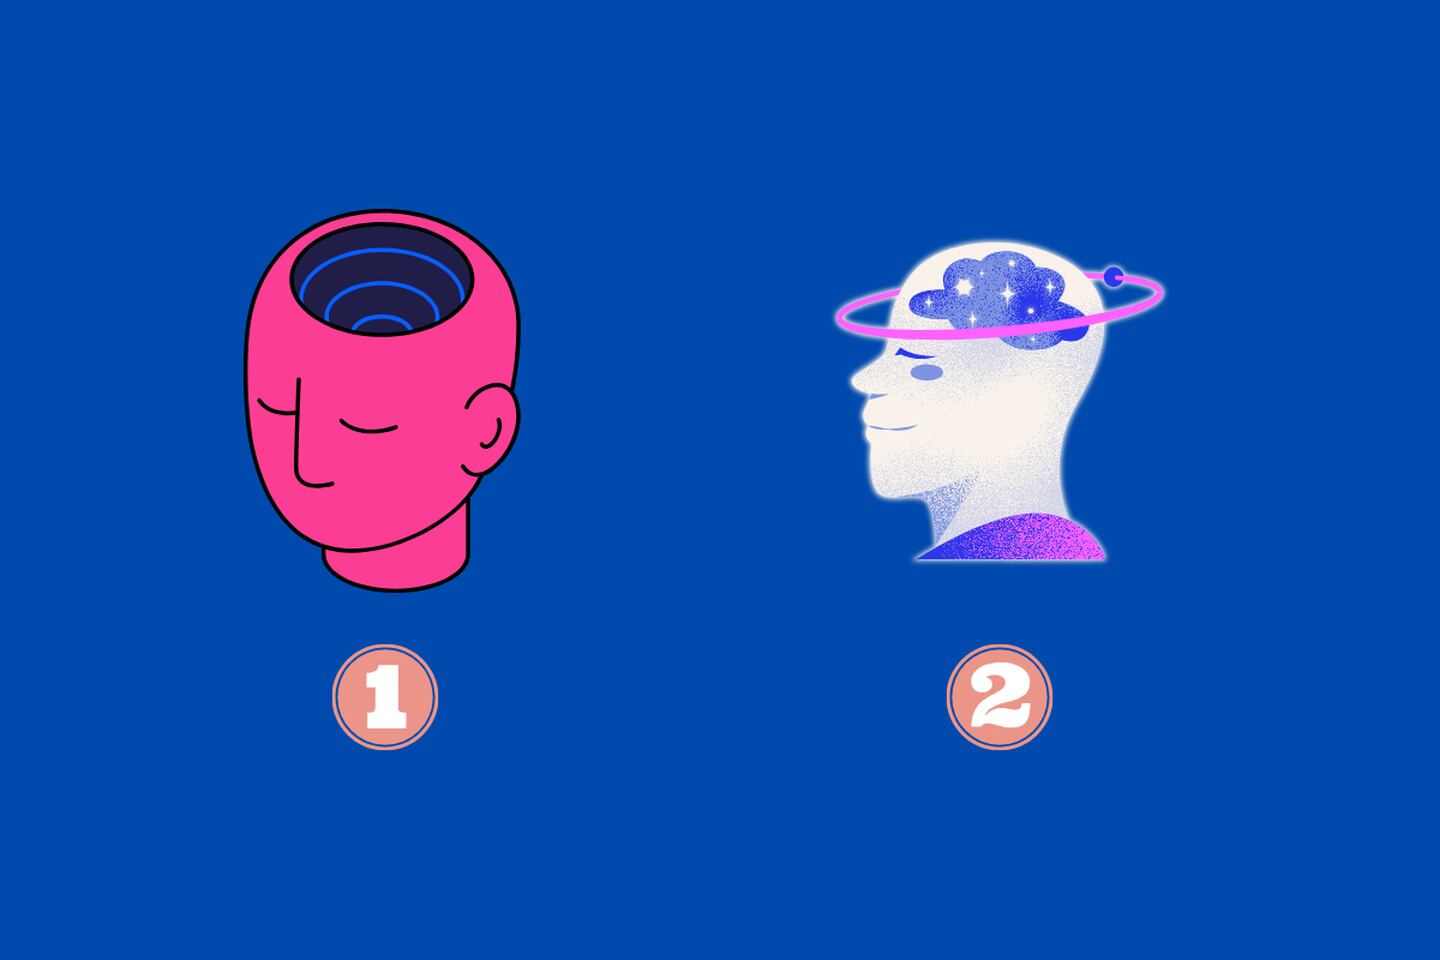 en este test de personalidad hay dos opciones: una cabeza rosada y una morada.